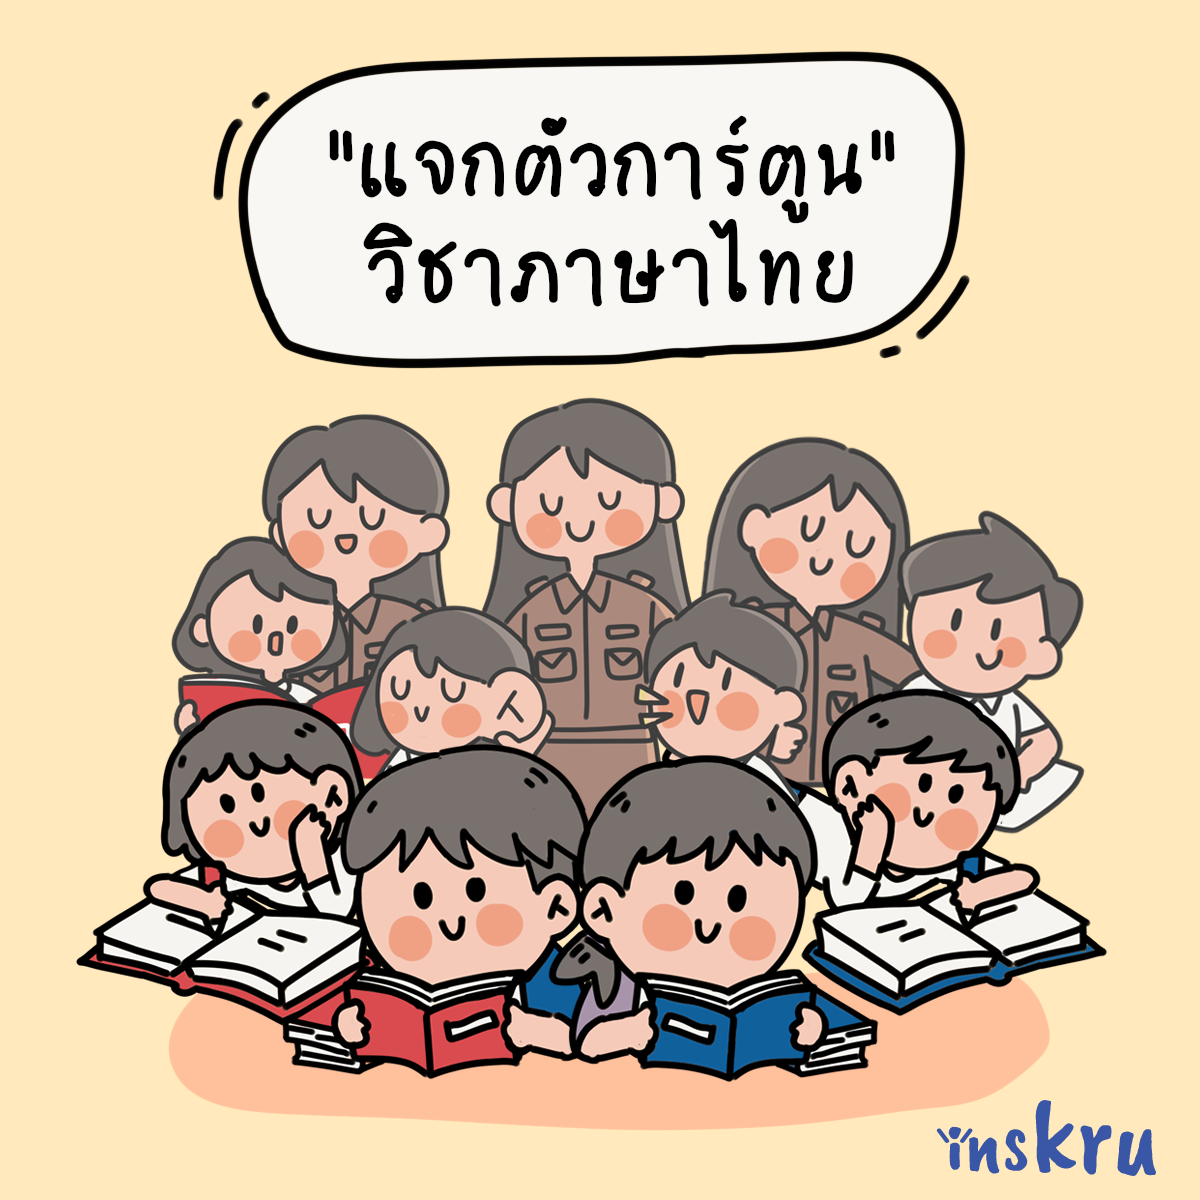 ภาพประกอบไอเดีย แจกตัวการ์ตูน ประกอบสื่อการสอน วิชาภาษาไทย